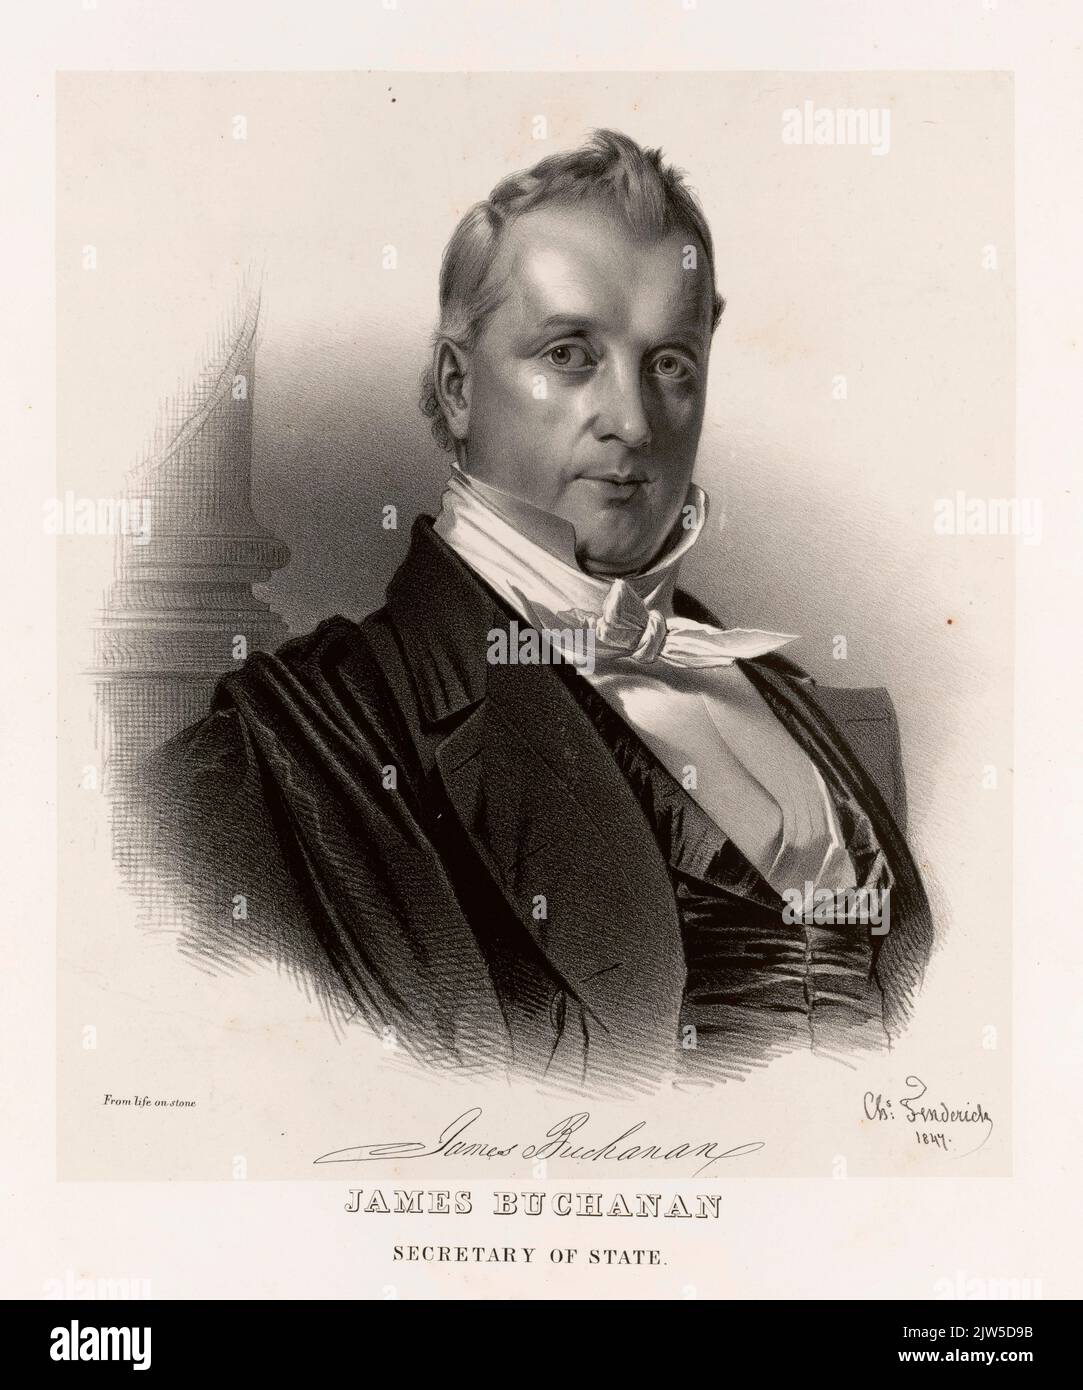 Ein Porträt von Präsident Hames Buchanan. Buchanan war 15. Präsident der USA. Dieses Porträt entstand, als er Staatssekretär war, zehn Ihrer vor seiner Amtszeit als Präsident. Stockfoto